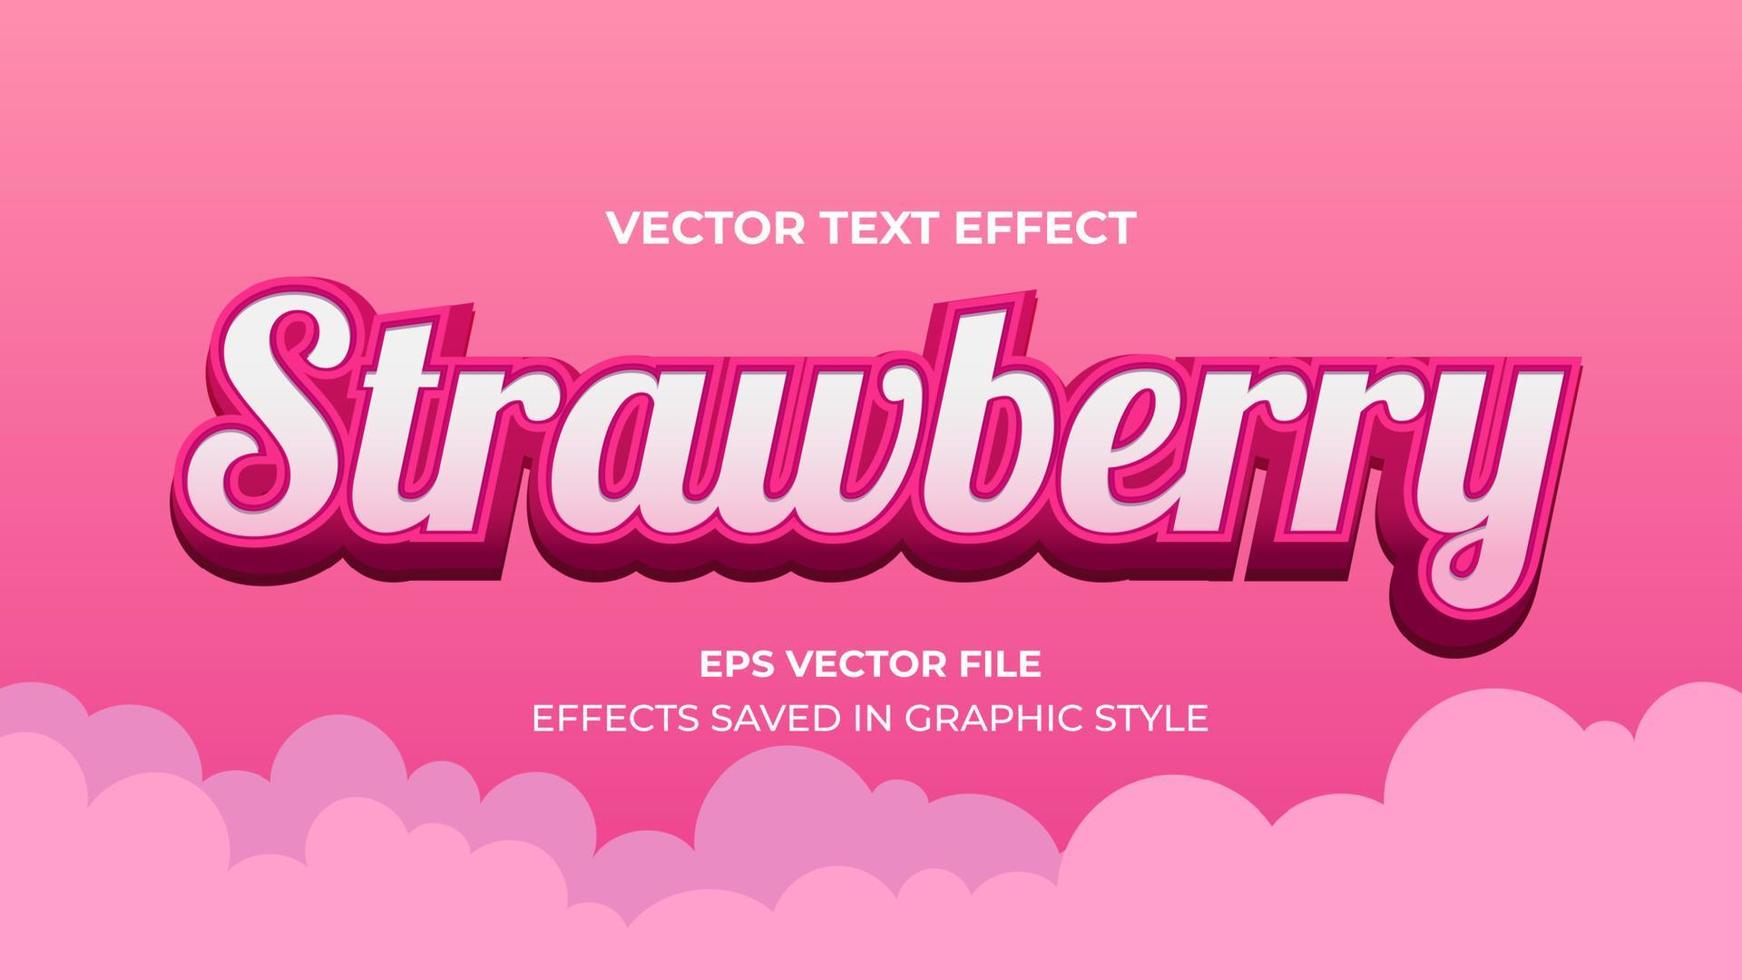 vektor text effekt. söt jordgubbstext